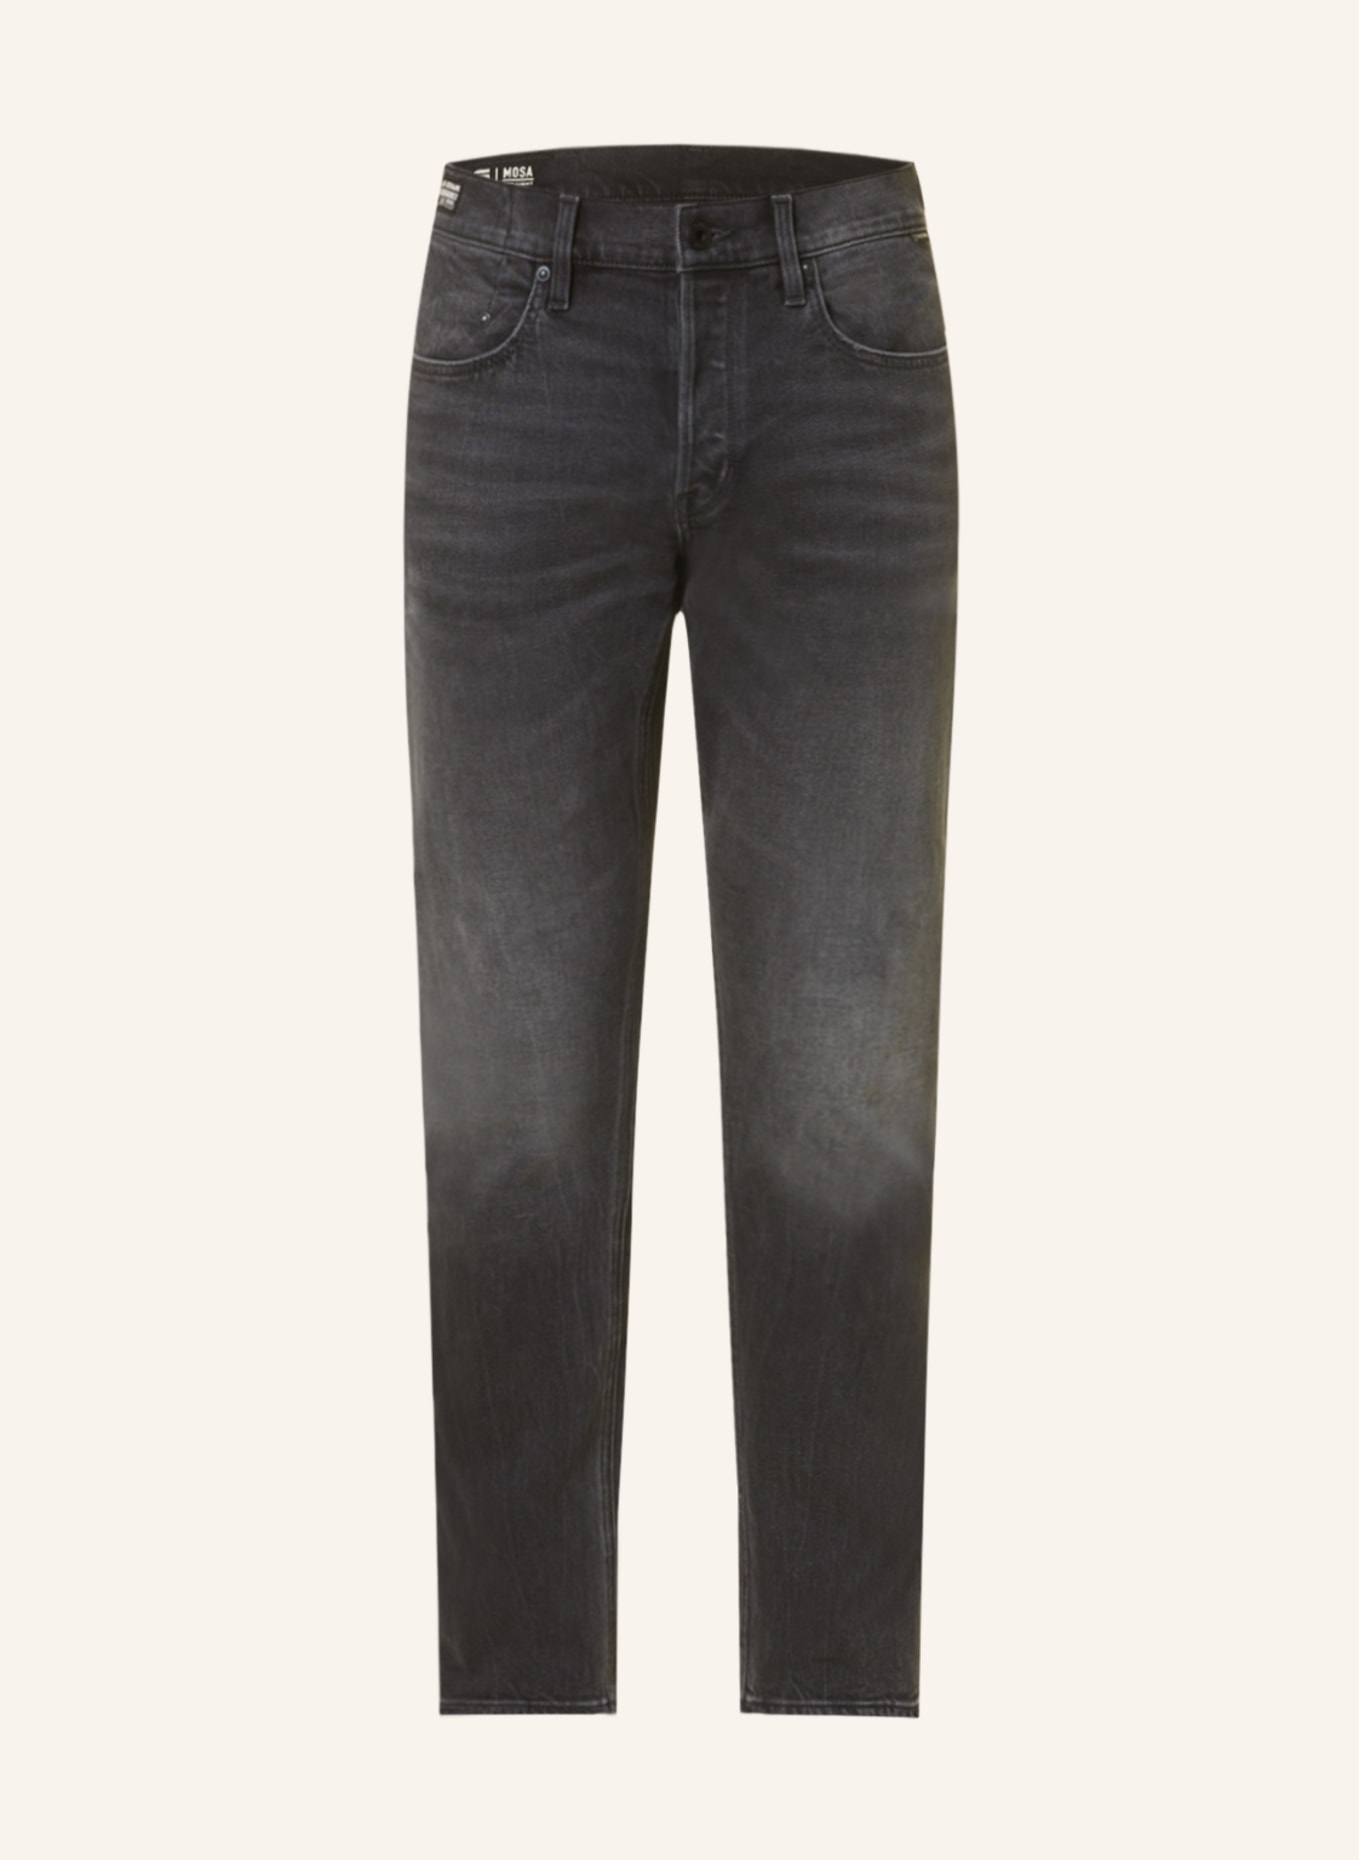 G-Star RAW Jeans MOSA Straight Fit, Farbe: G108 worn in black moon (Bild 1)